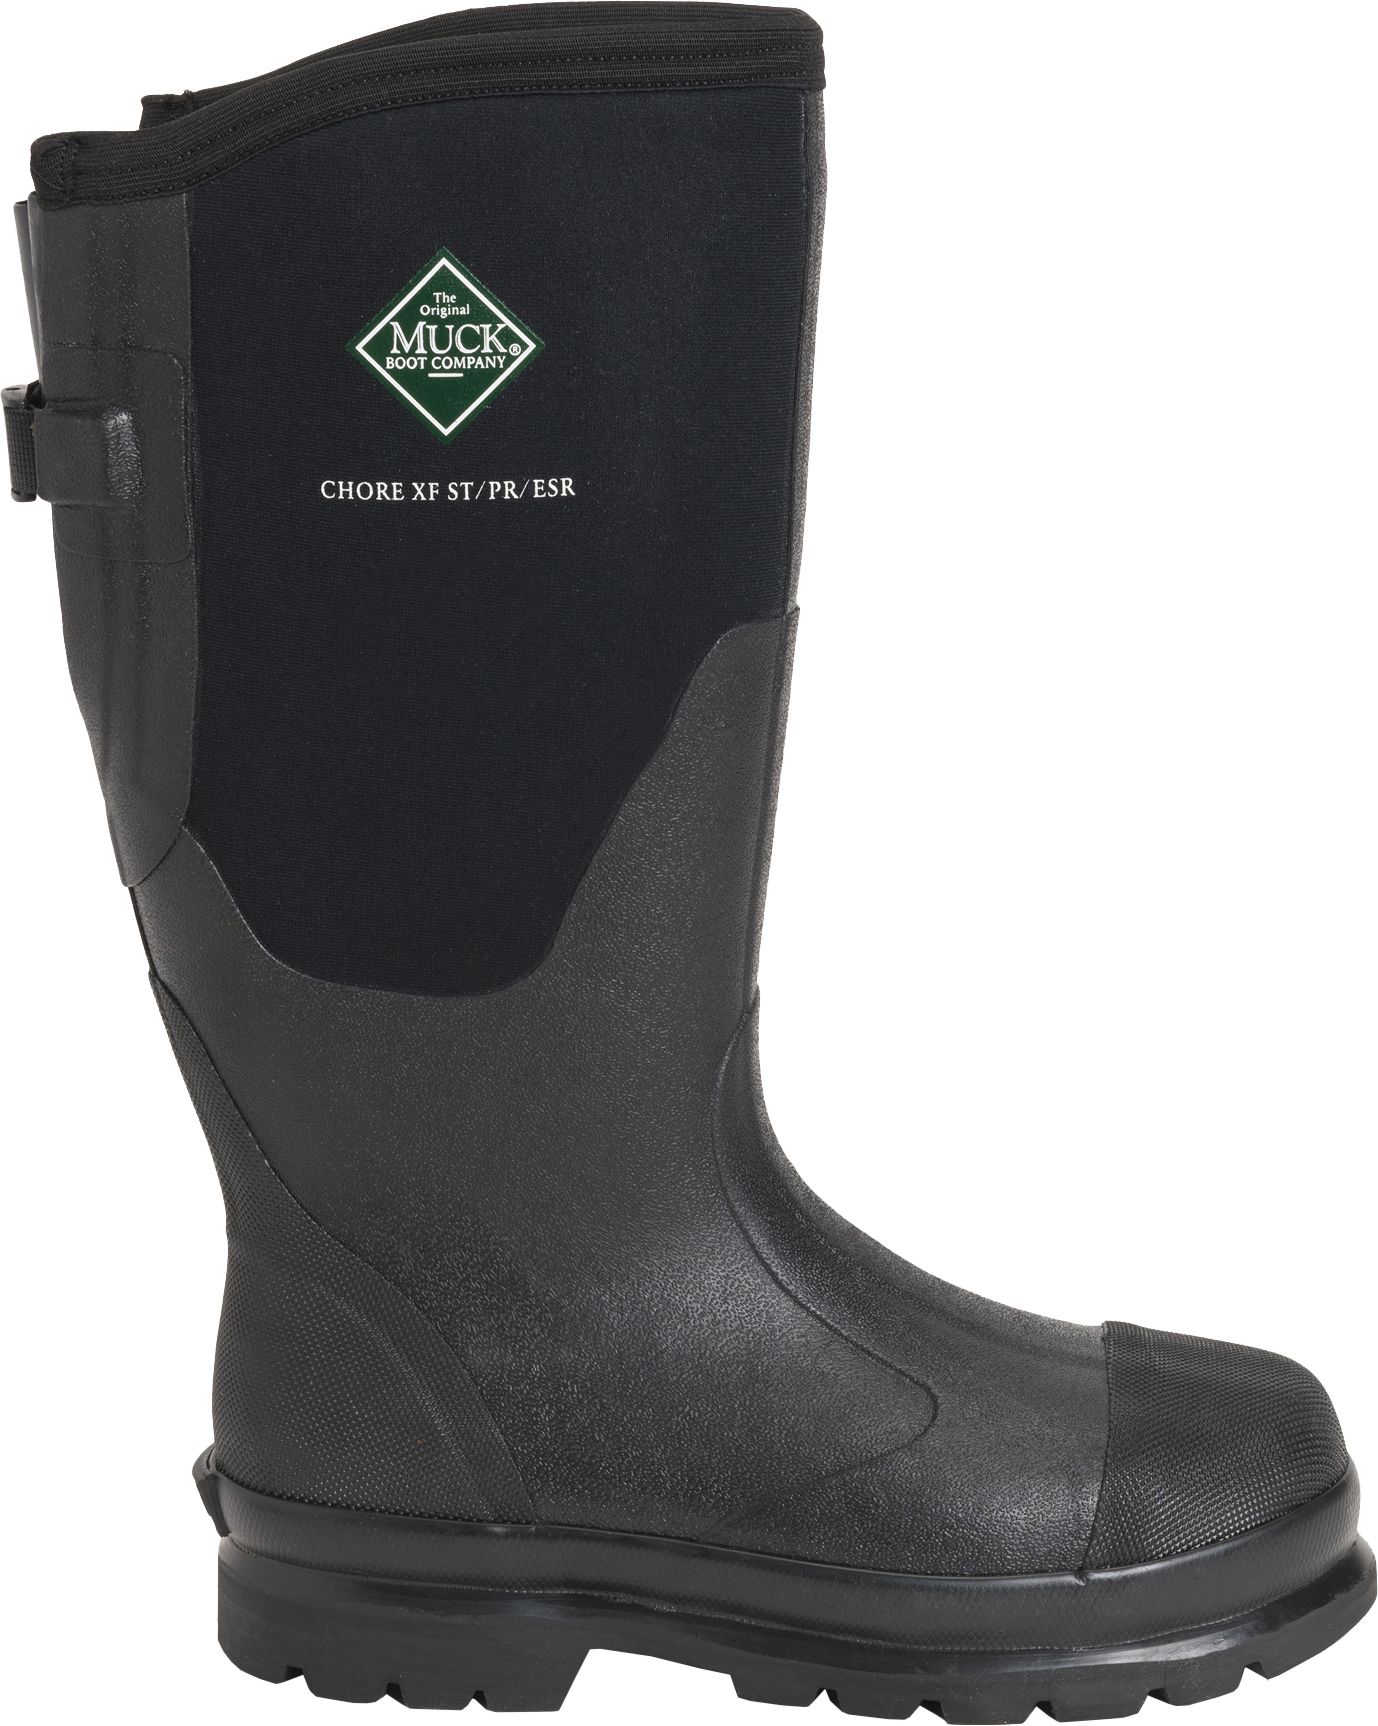 women's waterproof steel toe boots